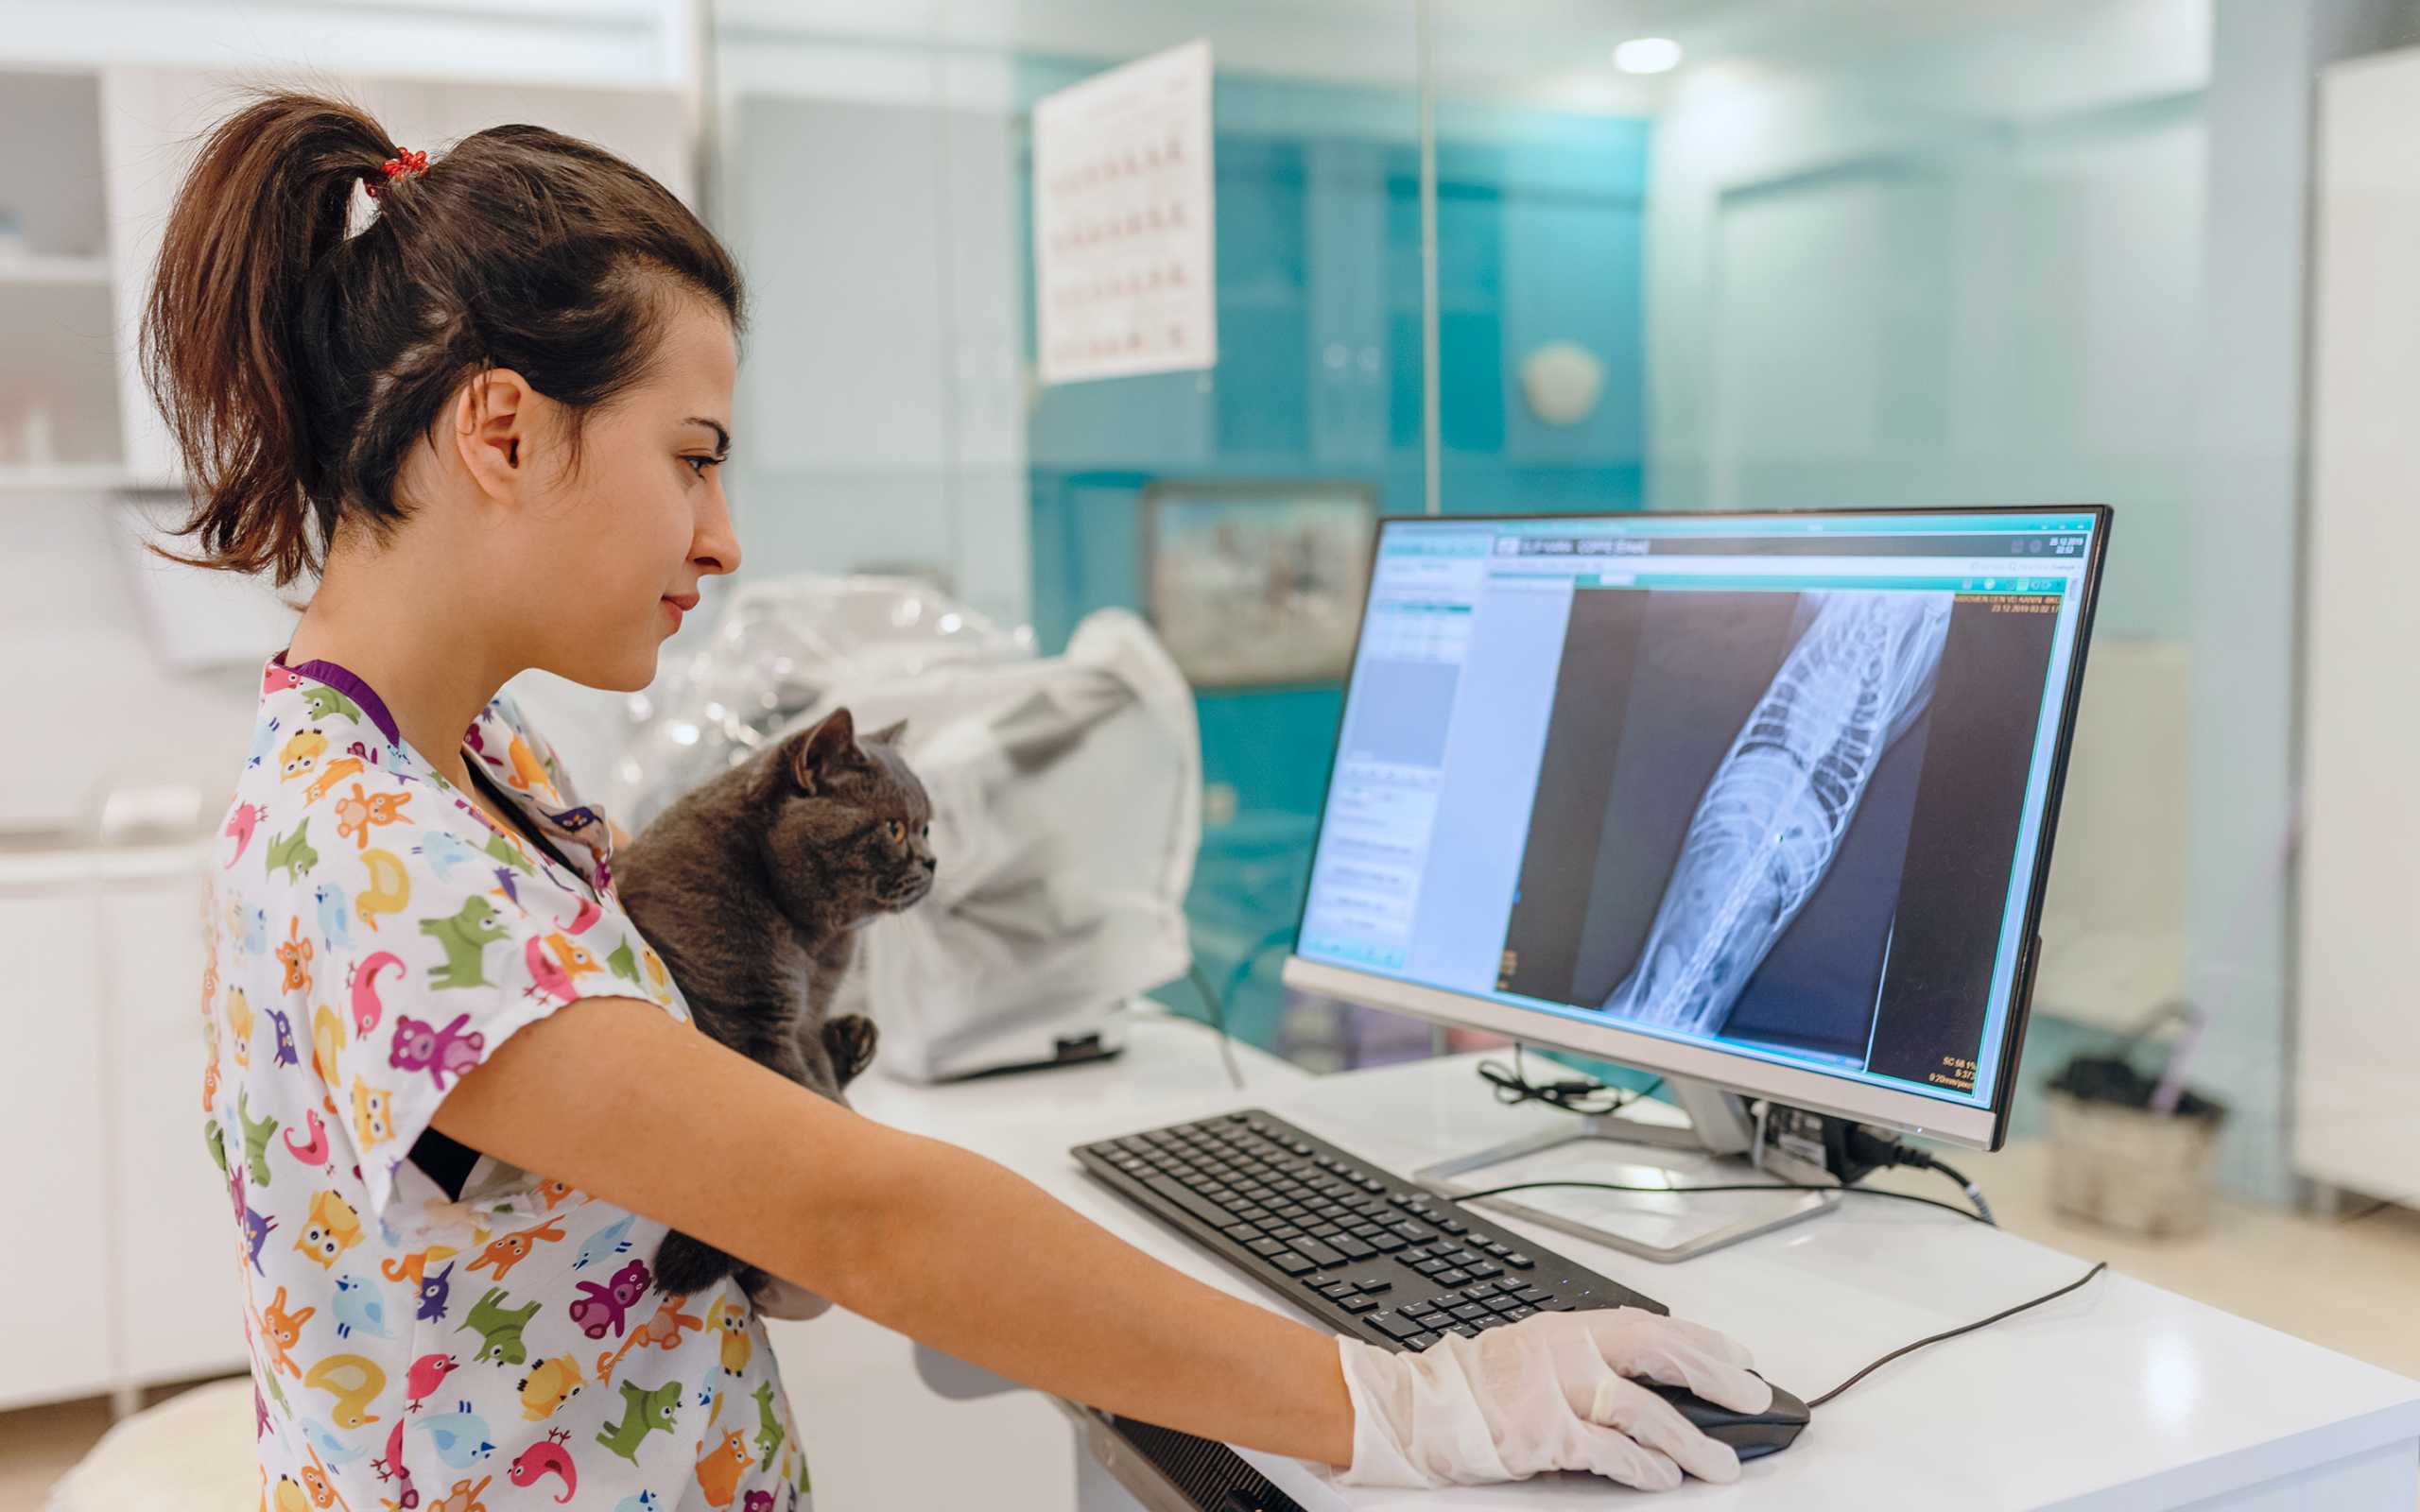 Eläinlääkäri pitää kissaa ja katsoo näyttöä, jossa on potilastietoja